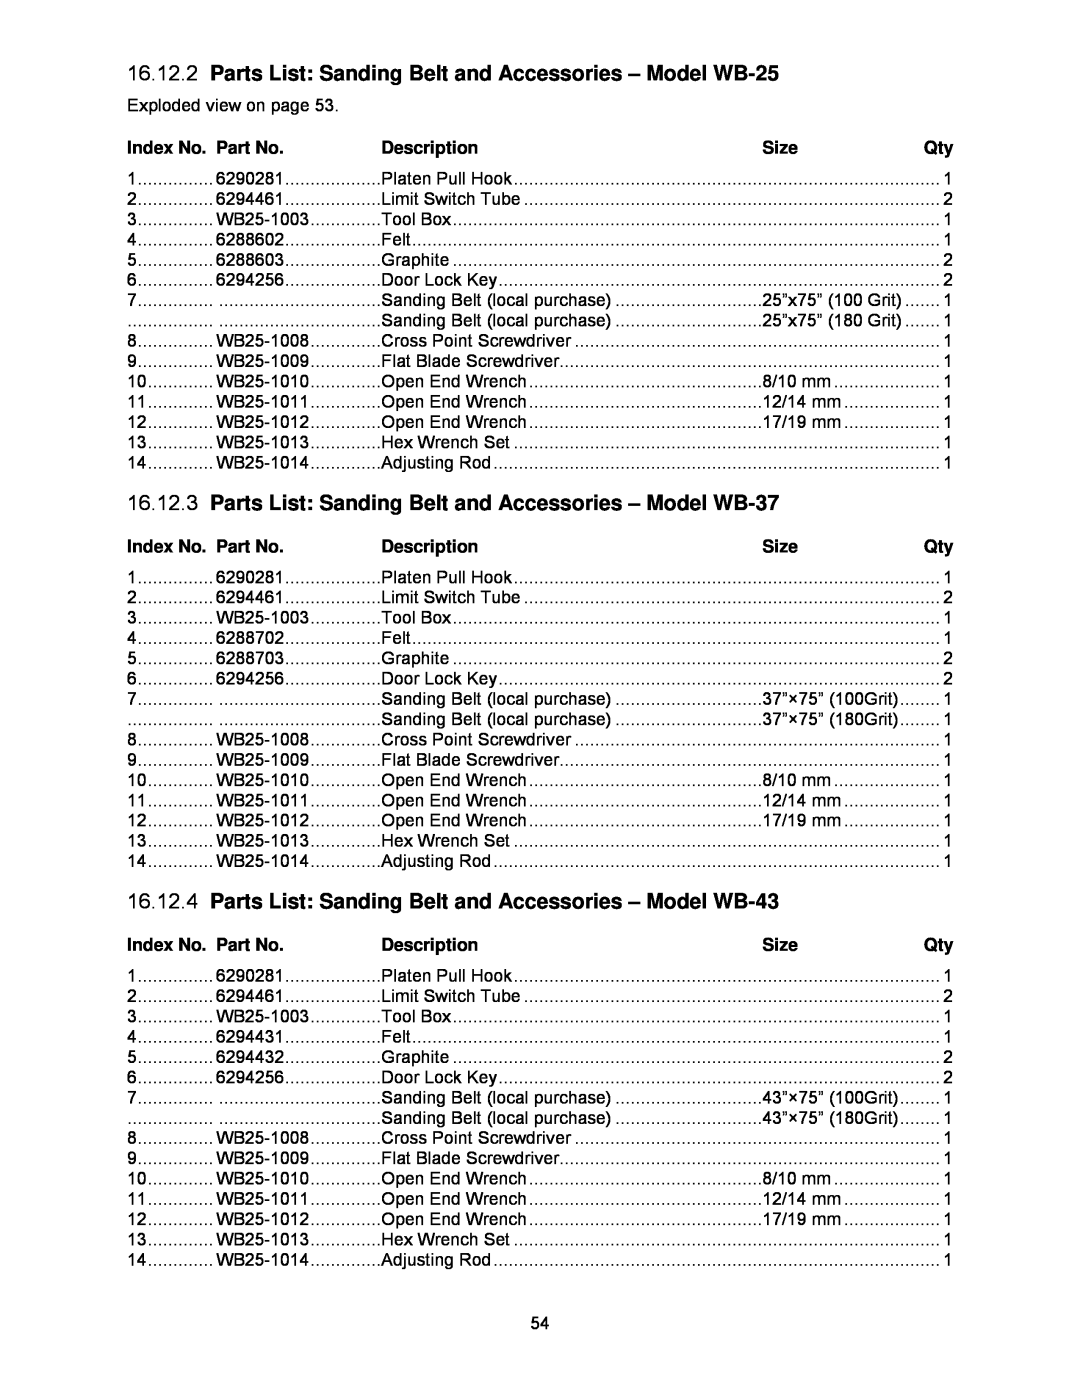 Powermatic WB-37, WB-43 Parts List Sanding Belt and Accessories - Model WB-25, Index No. Part No, Description, Size 